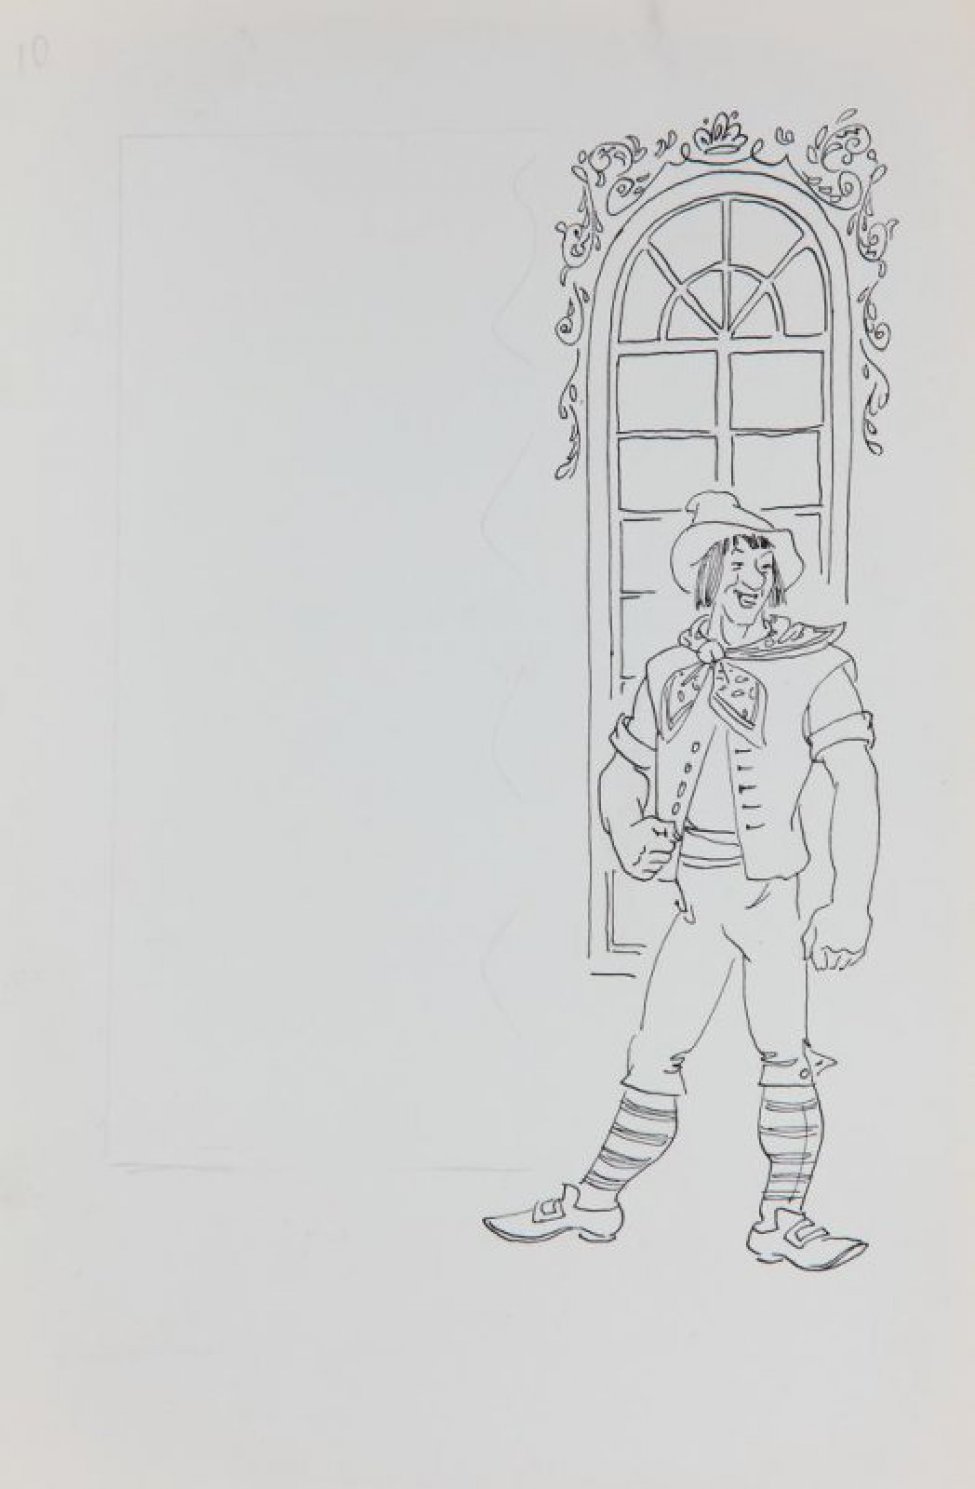 В правой части листа - изображение улыбающегося молодого человека, стоящего на фоне окна, декорированного цветочным орнаментом. Слева -  разметка карандашом для текста.